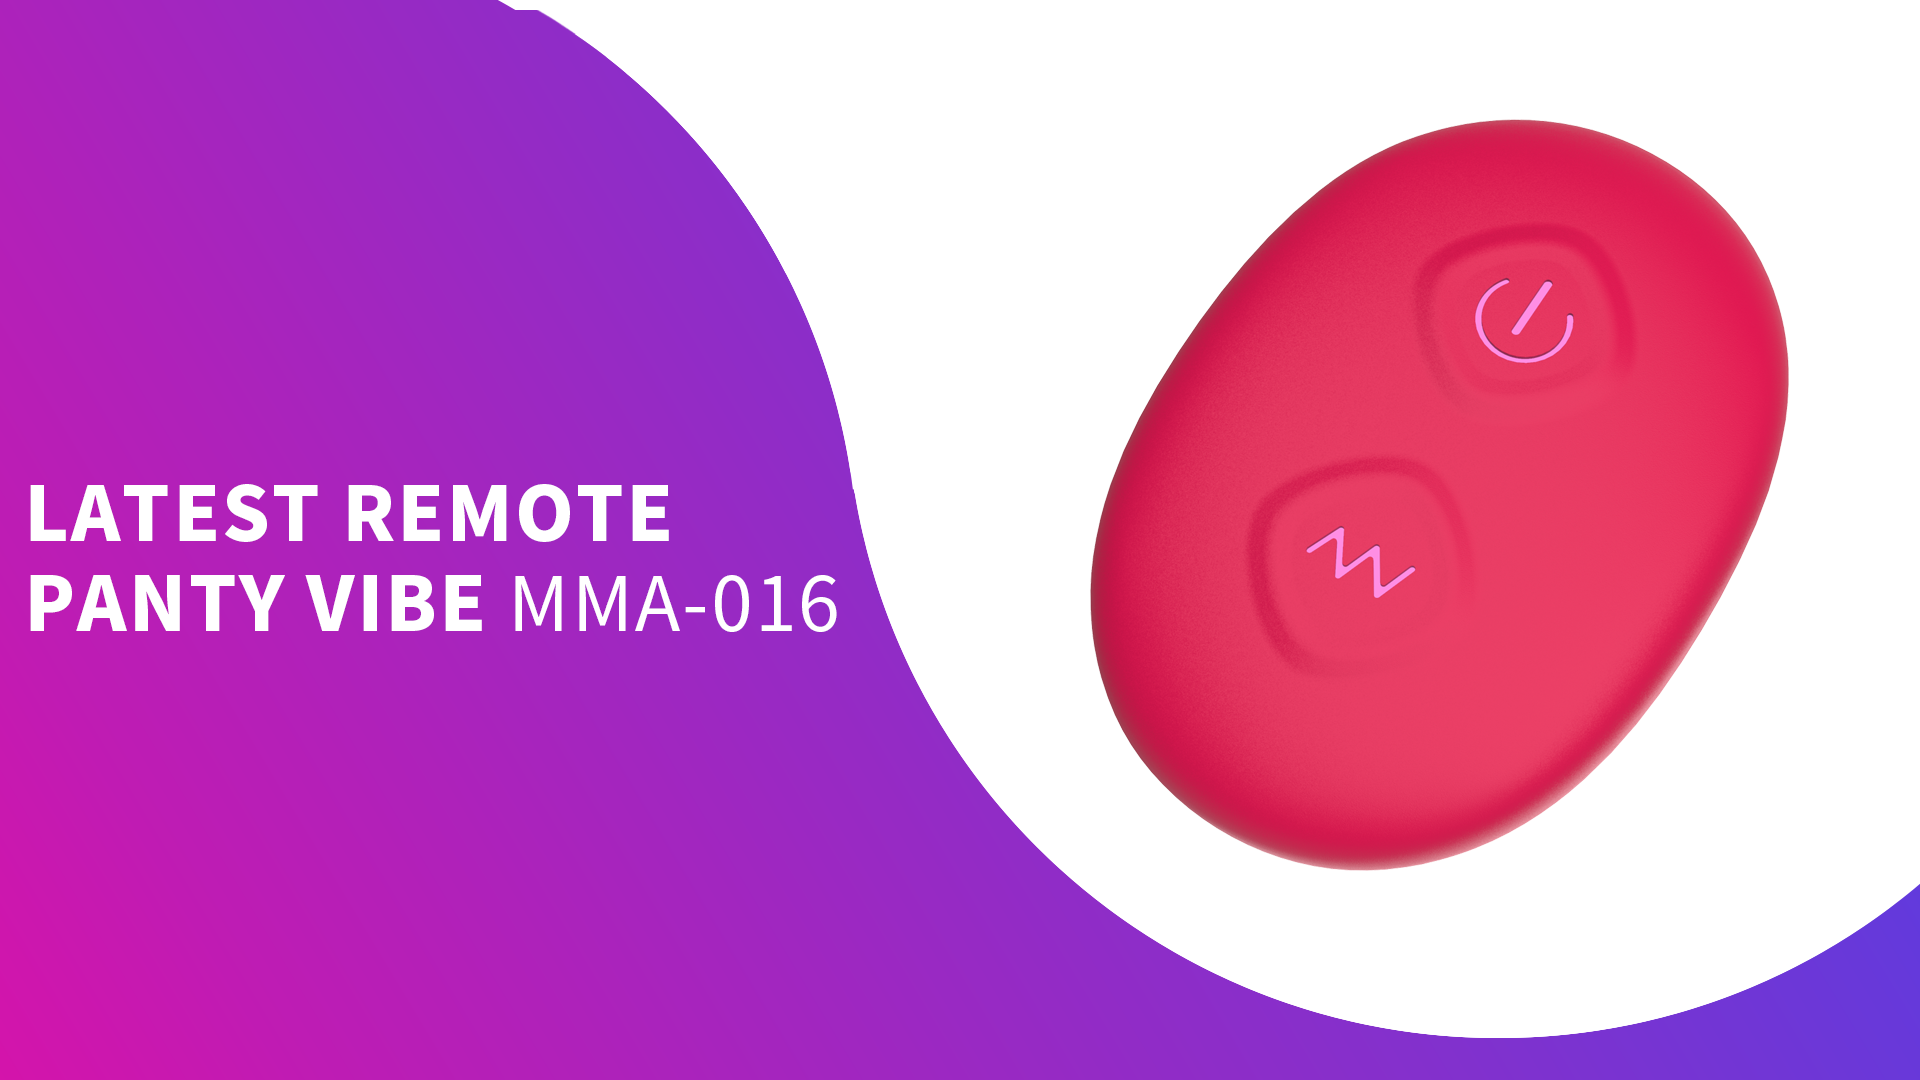 MMA-016 Производитель секс-игрушек из Китая принесет вам новейший пульт дистанционного управления Panty Vibe Remote Control